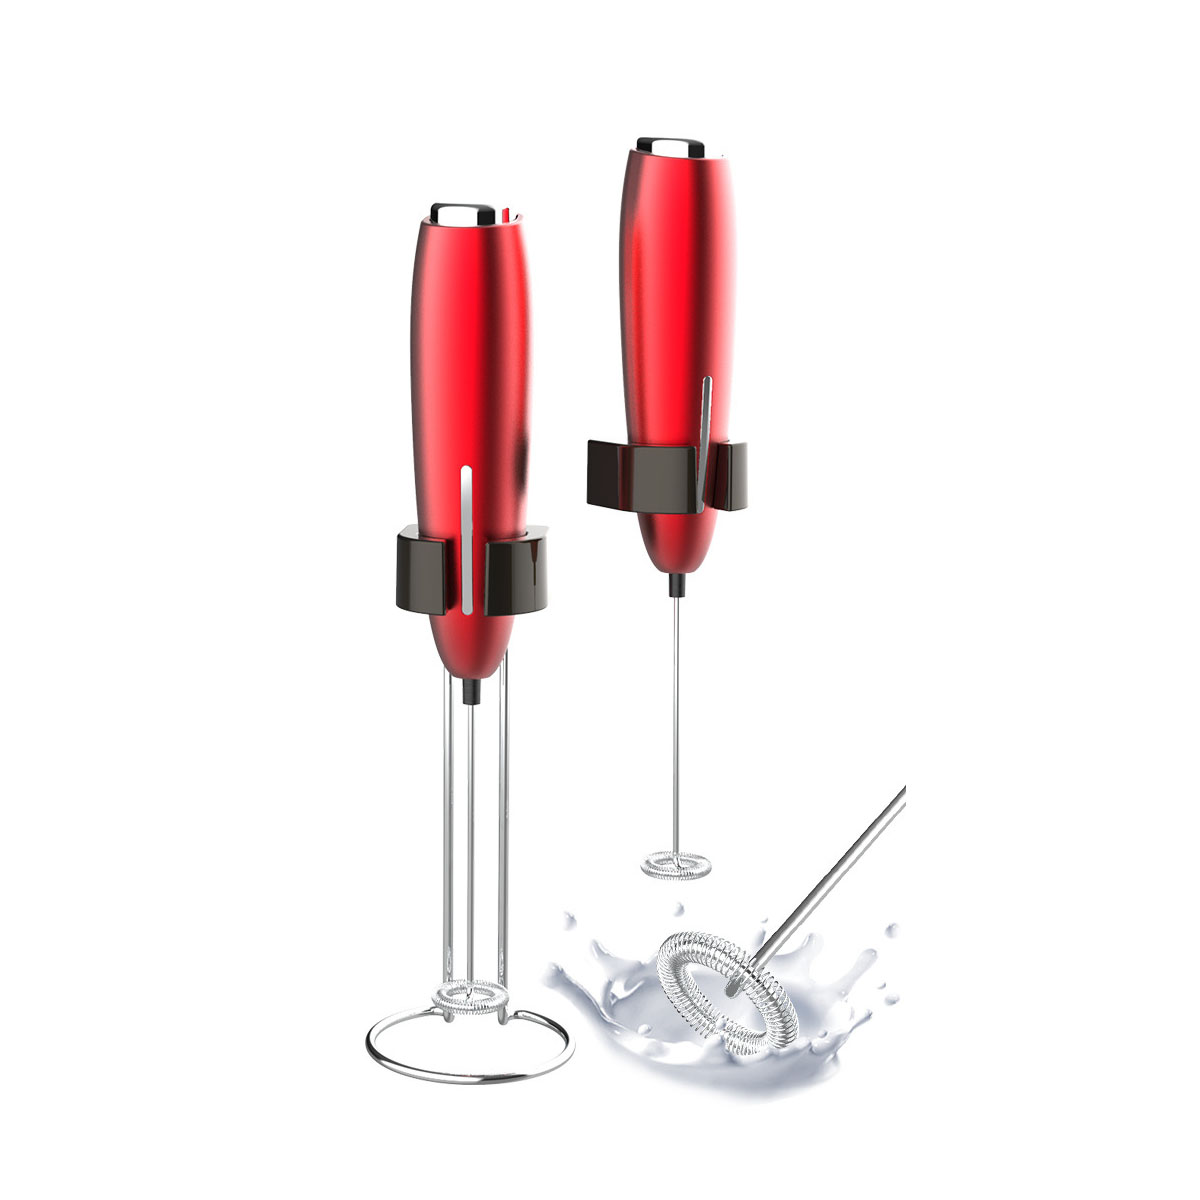 LACAMAX Roter elektrischer Milchaufschäumer, Milchaufschäumer leicht Stabiles Rühren, kompakt Watt - 6 und Rot